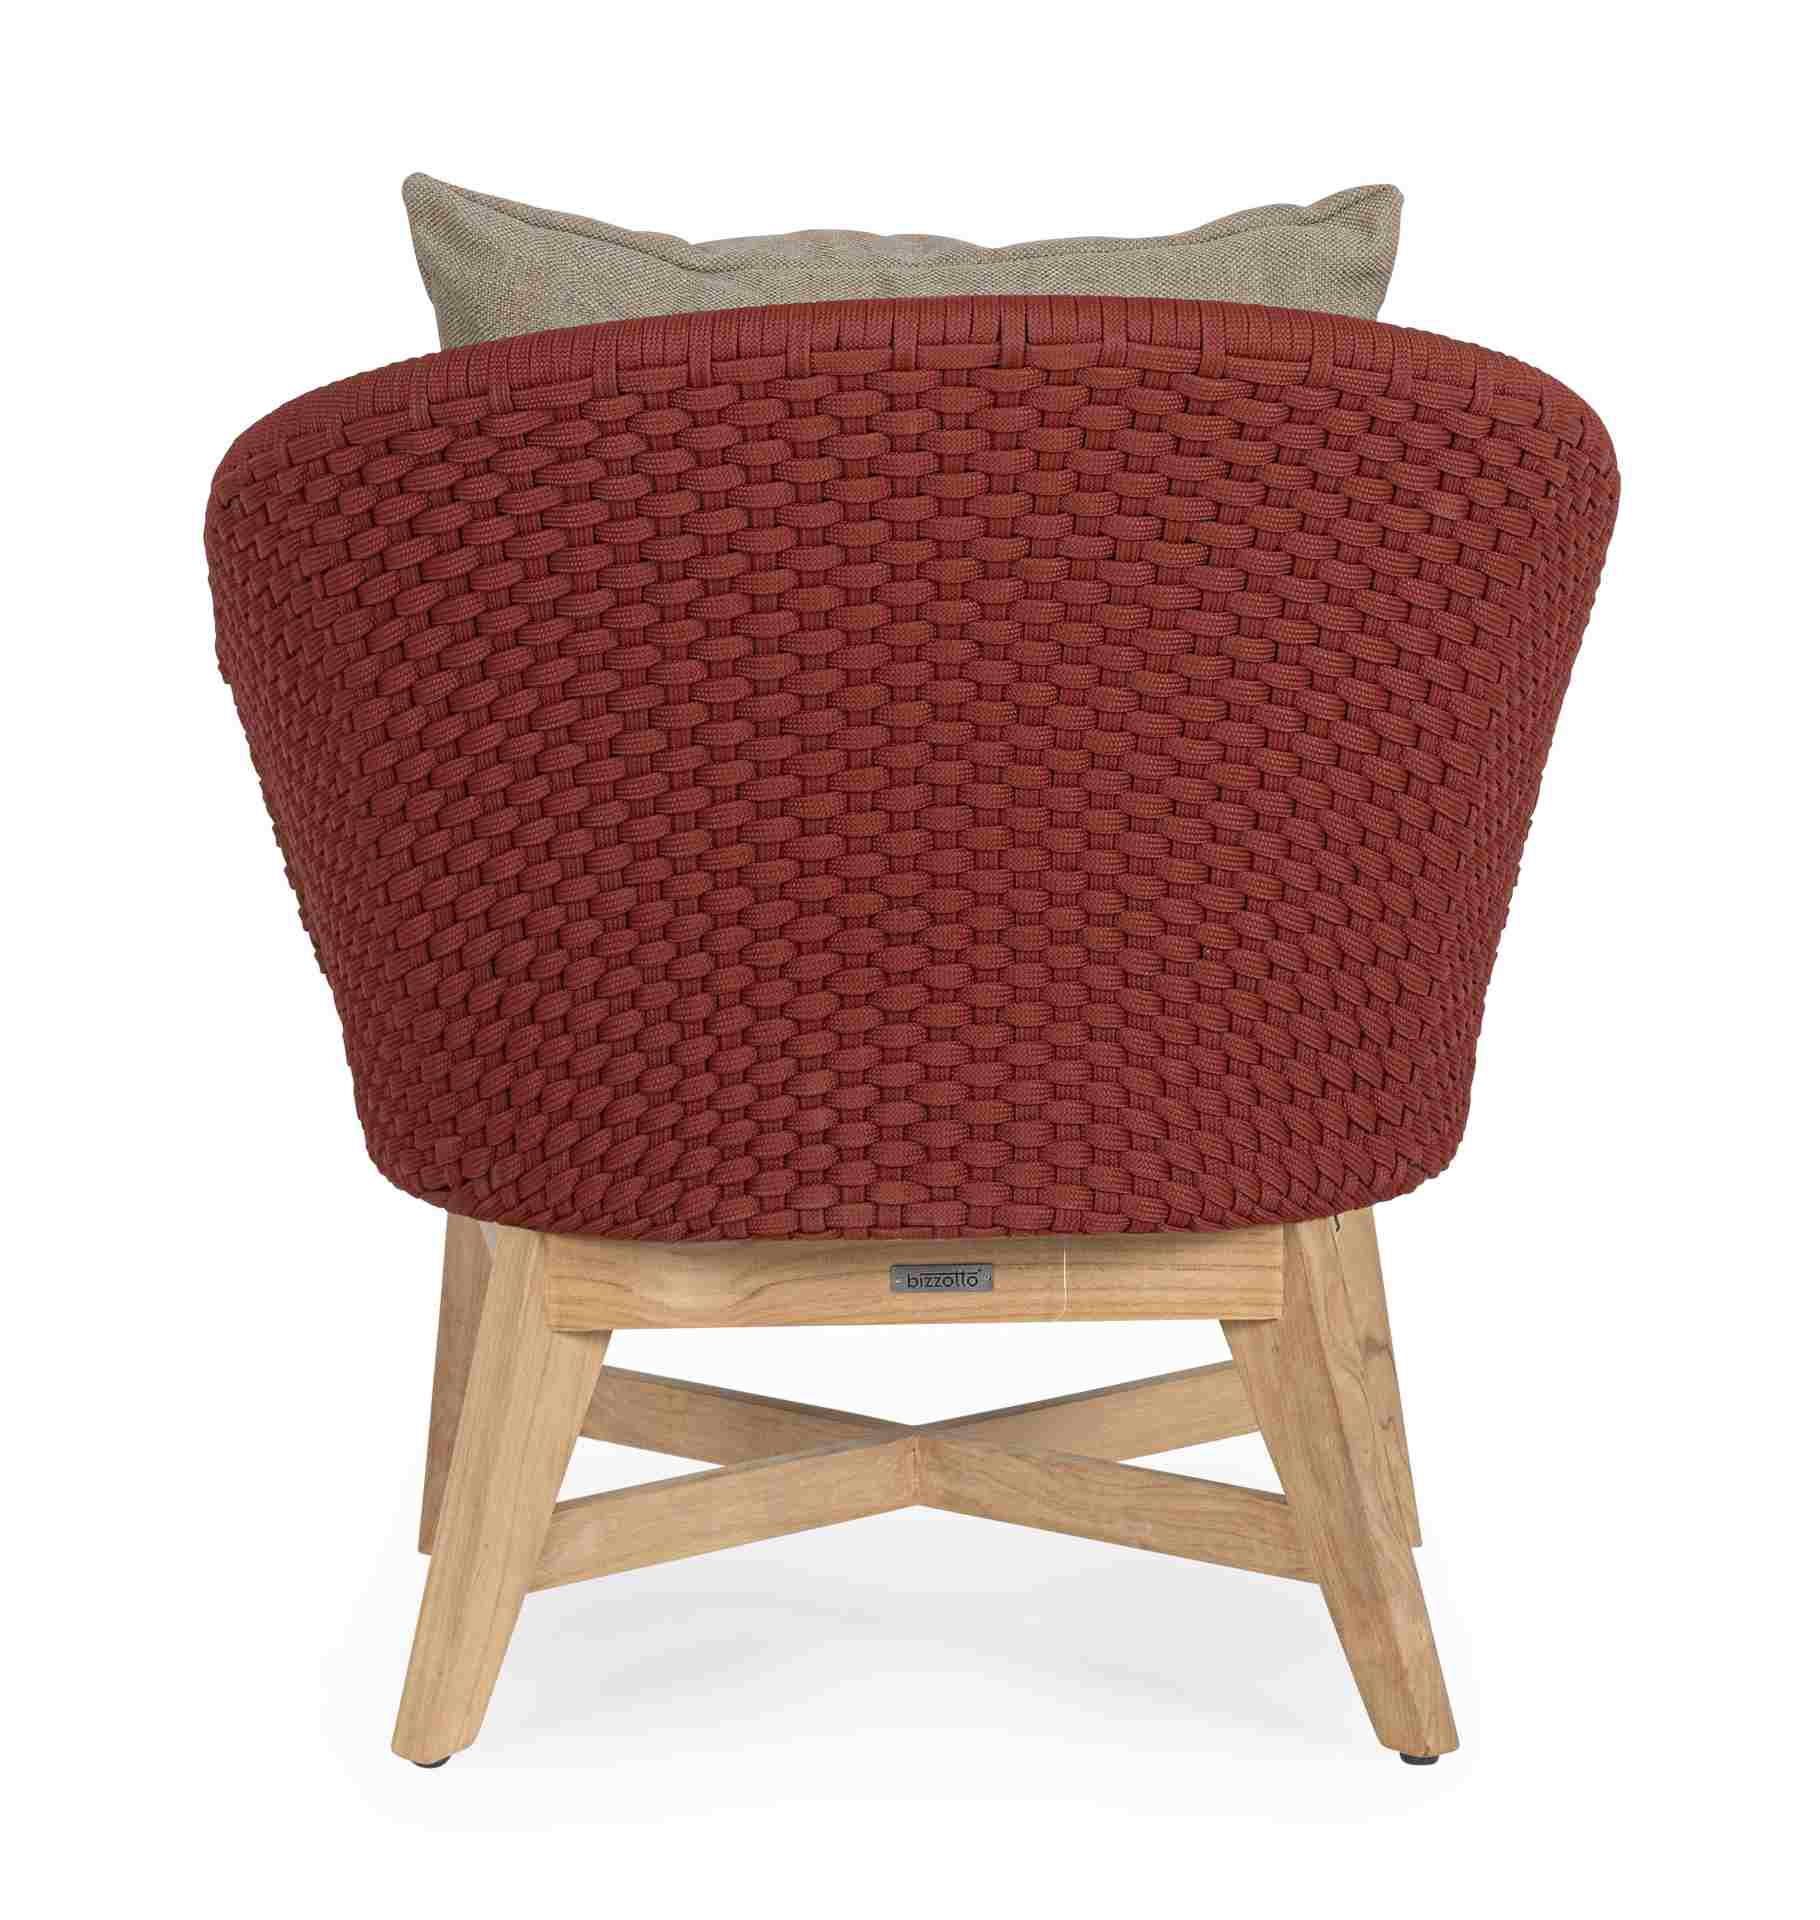 Der Gartensessel Coachella überzeugt mit seinem modernen Design. Gefertigt wurde er aus Olefin-Stoff, welcher einen roten Farbton besitzt. Das Gestell ist aus Teakholz und hat eine natürliche Farbe. Der Sessel verfügt über eine Sitzhöhe von 39 cm und ist 